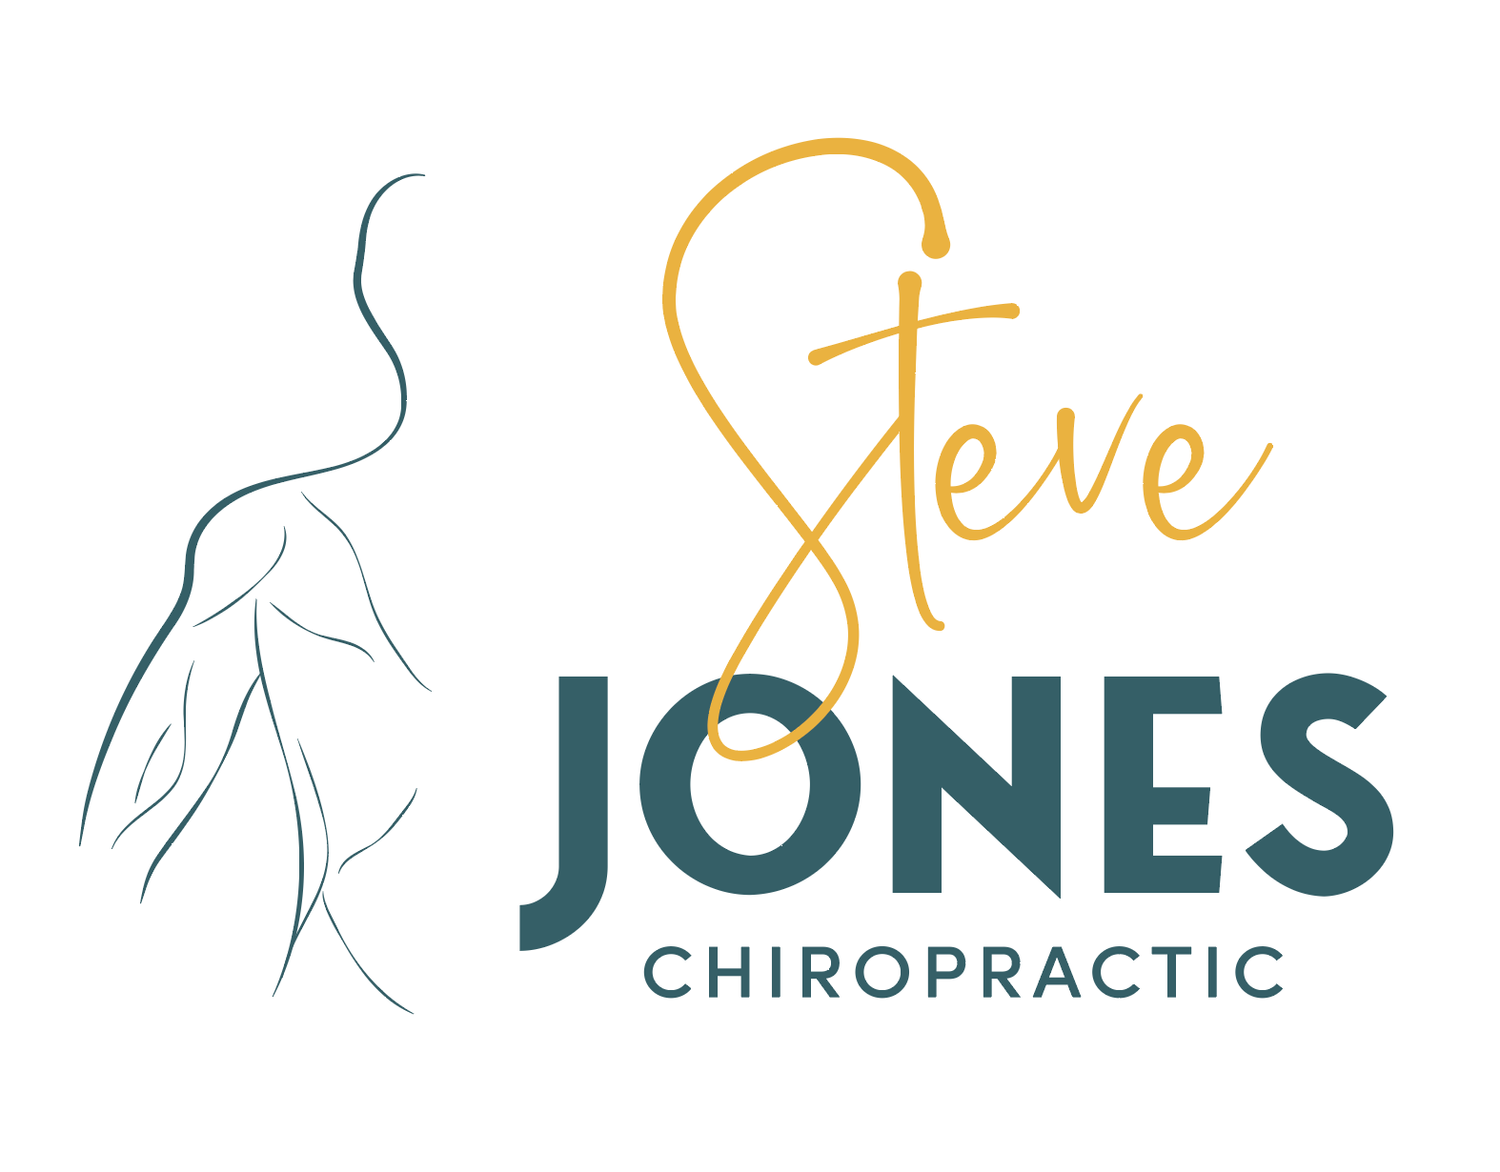 Steve Jones Chiropractic